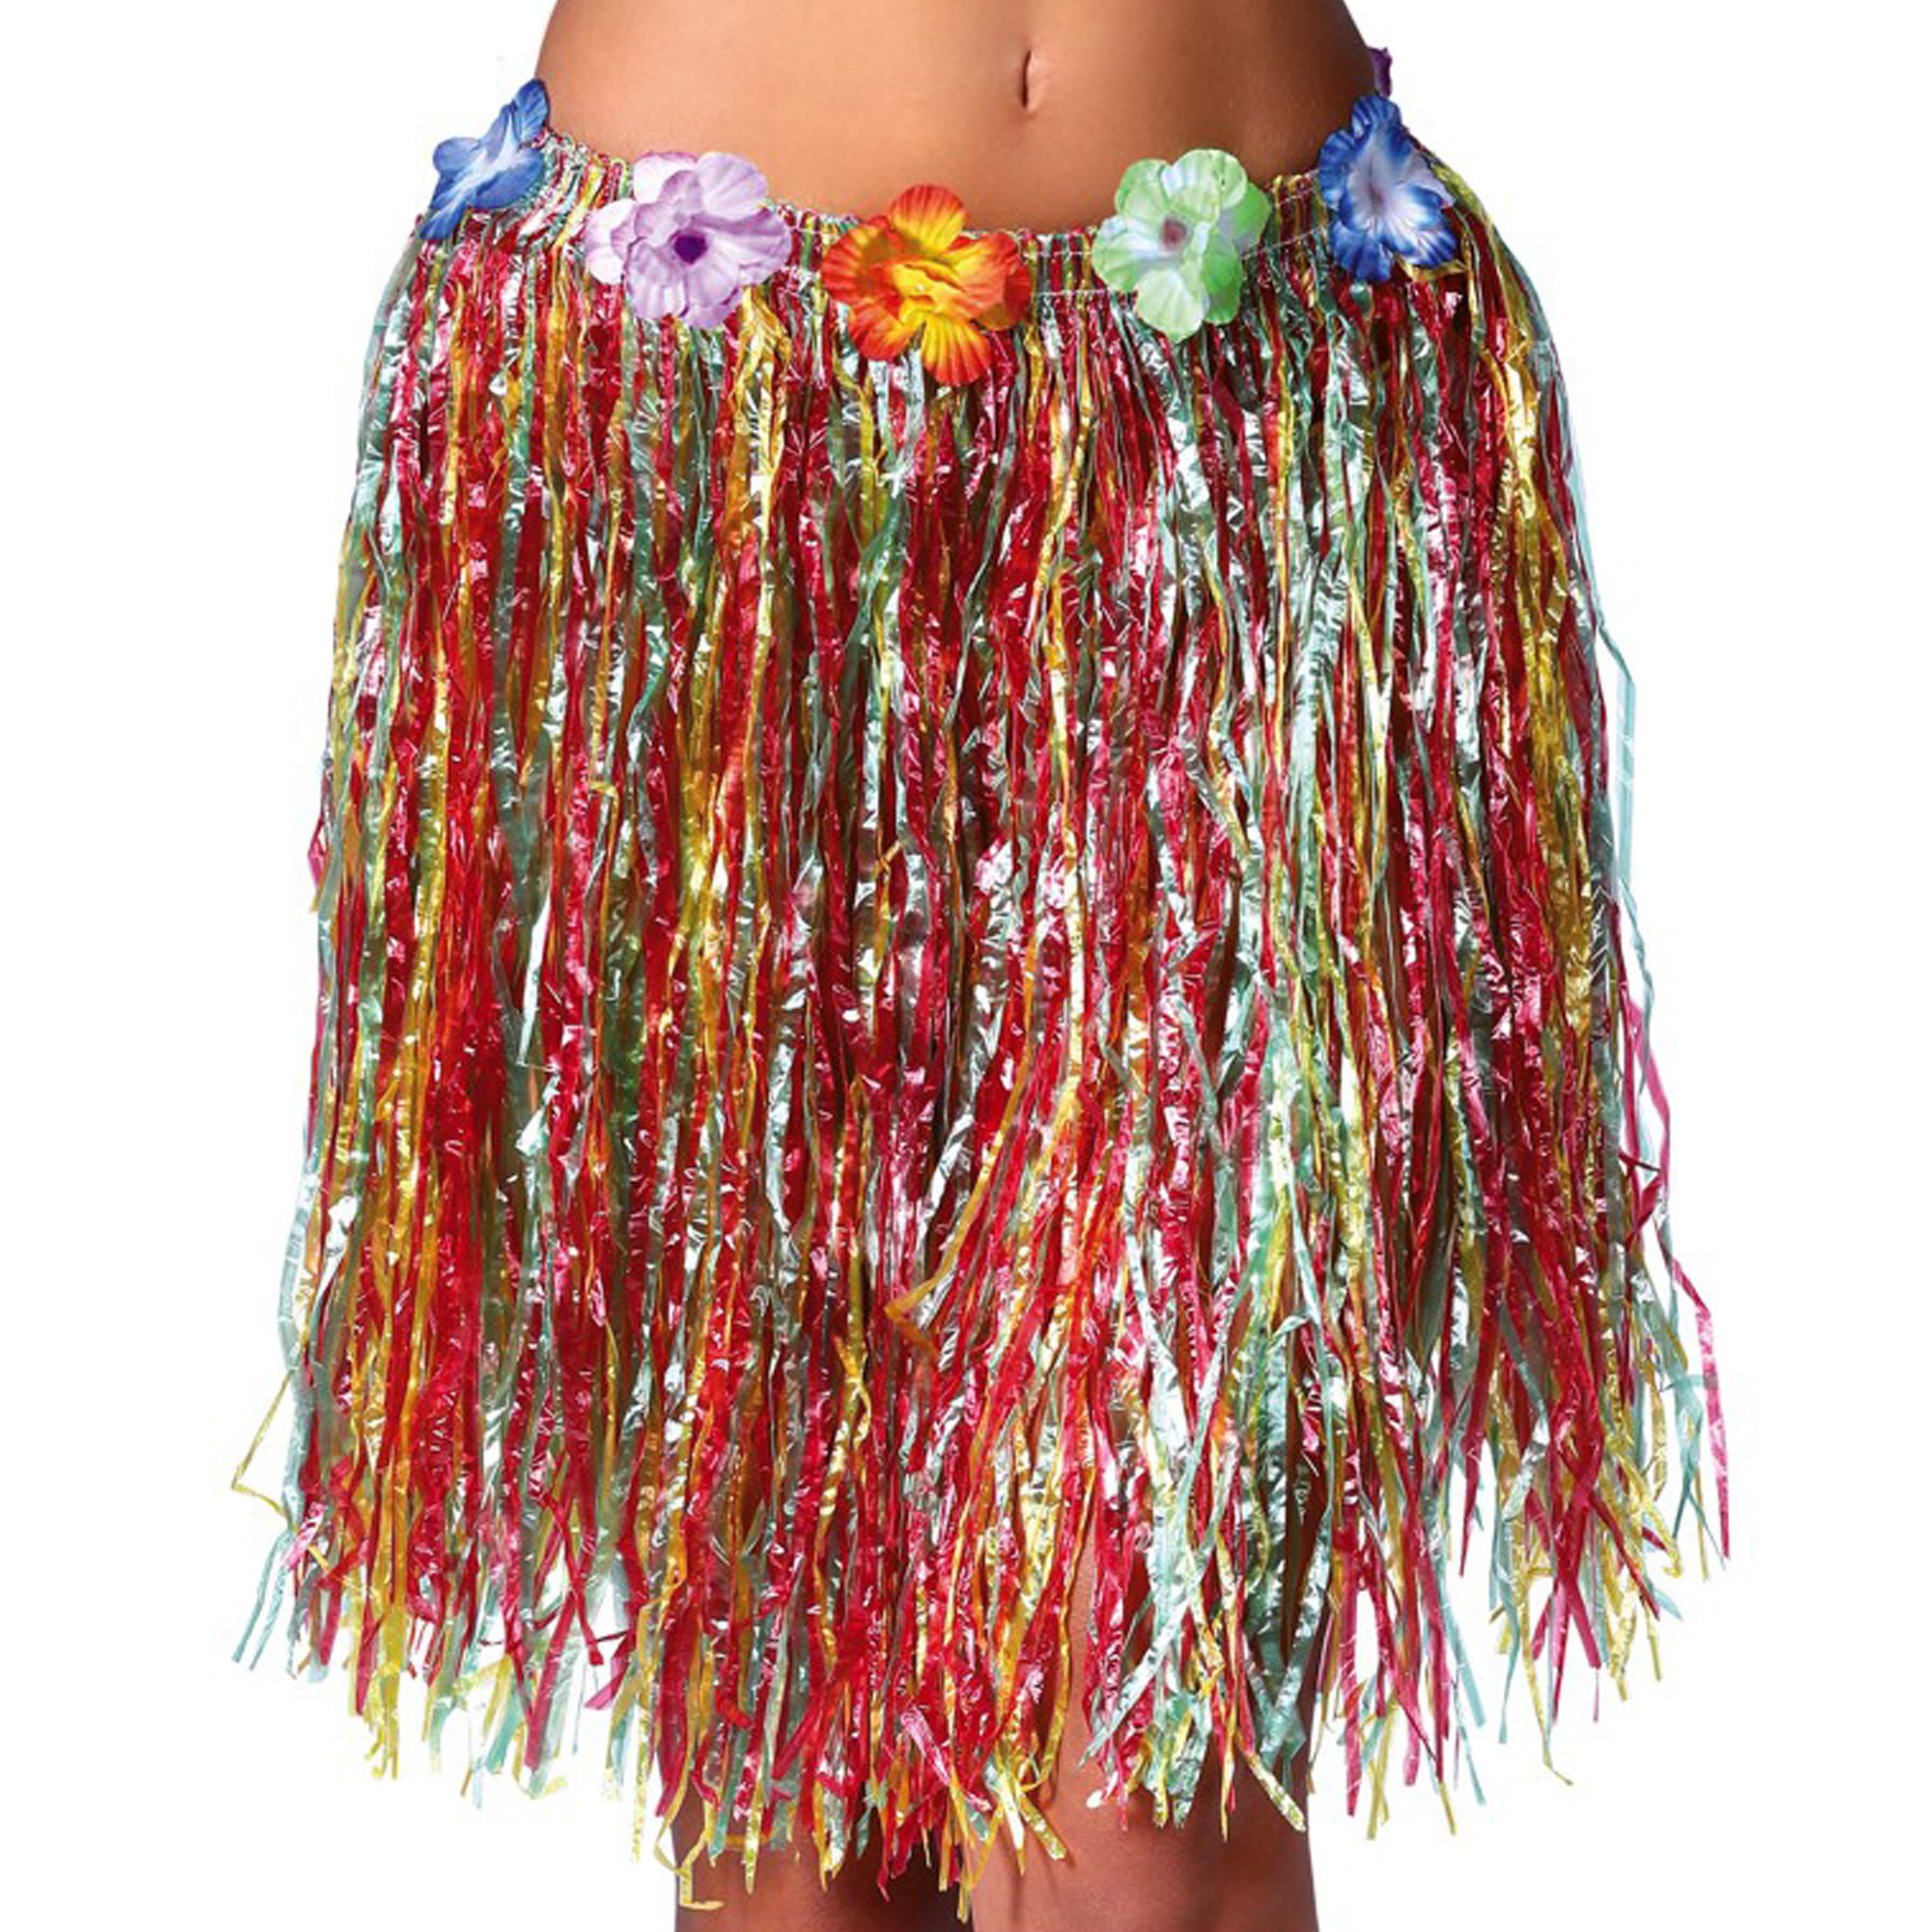 Fiestas Guirca Hawaii verkleed rokje voor volwassenen multicolour 50 cm hoela rok tropisch